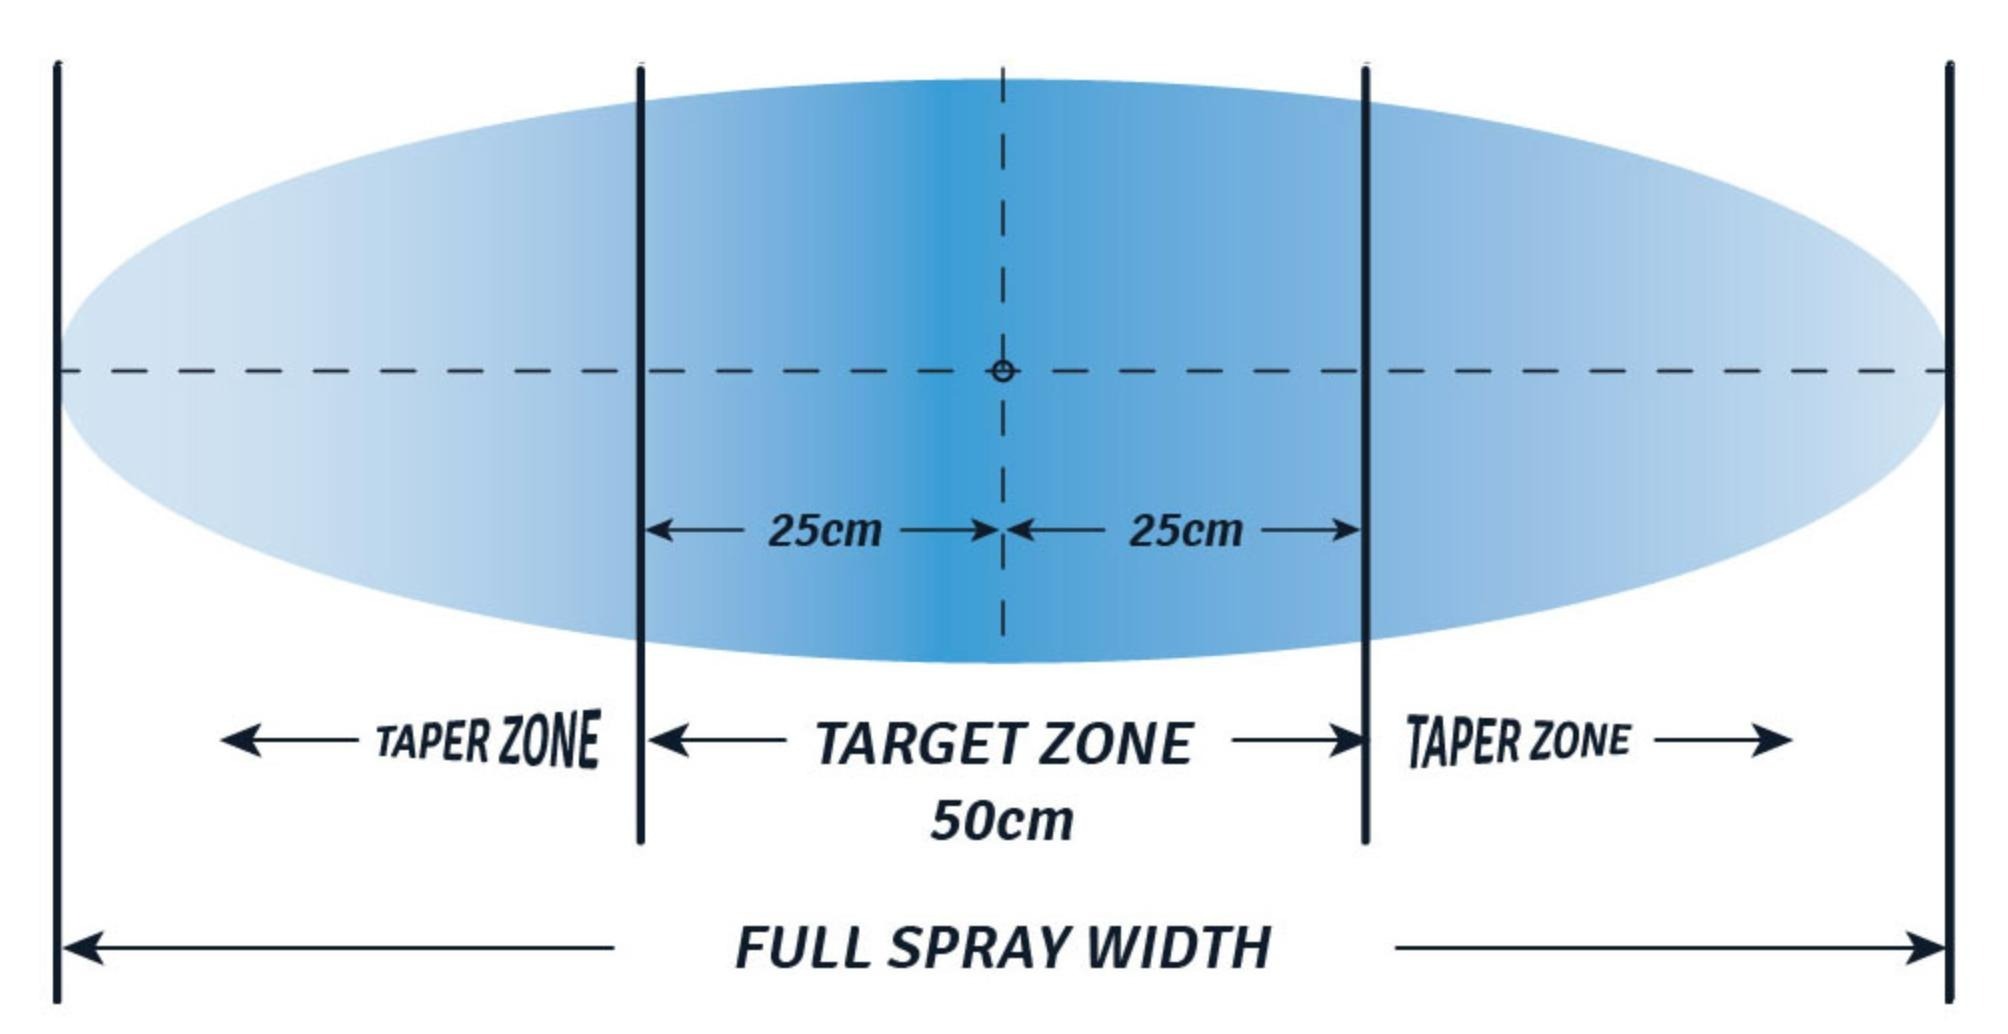 Spray zones